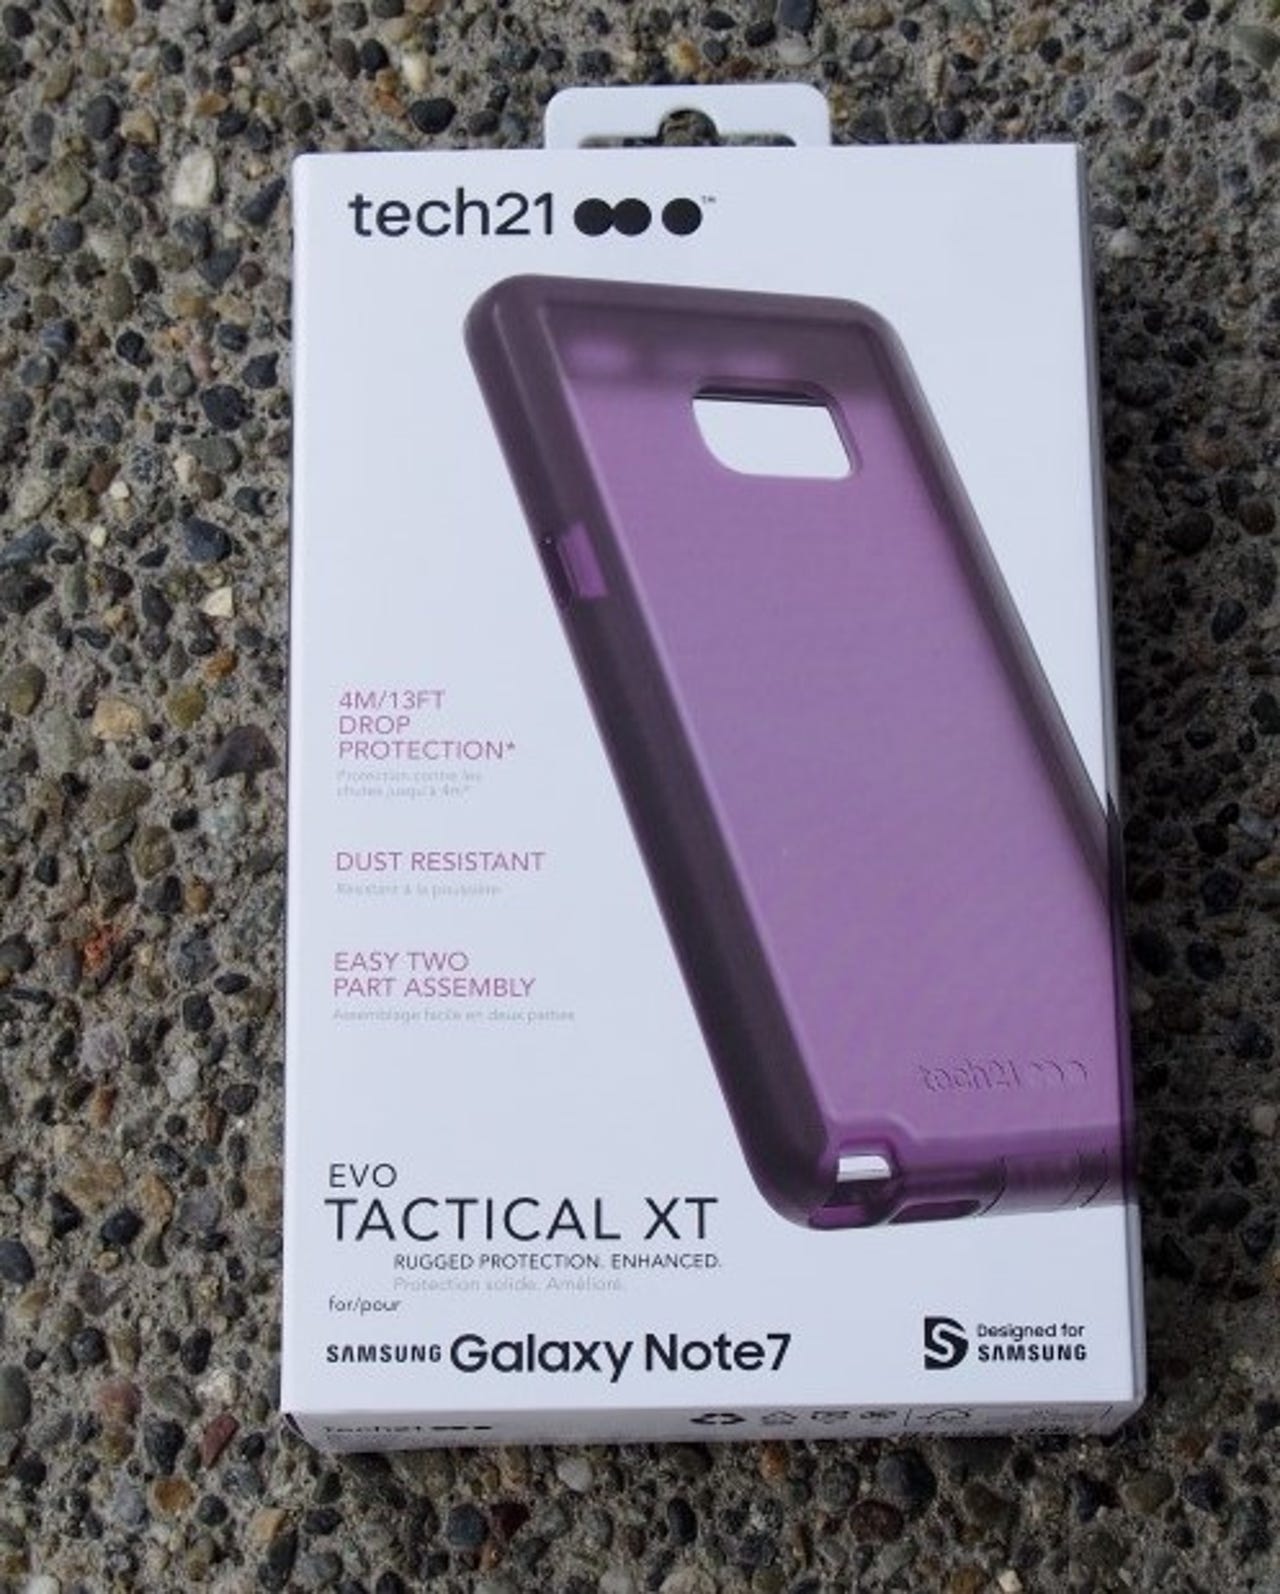 tech21-tactical-xt-note-7-14.jpg